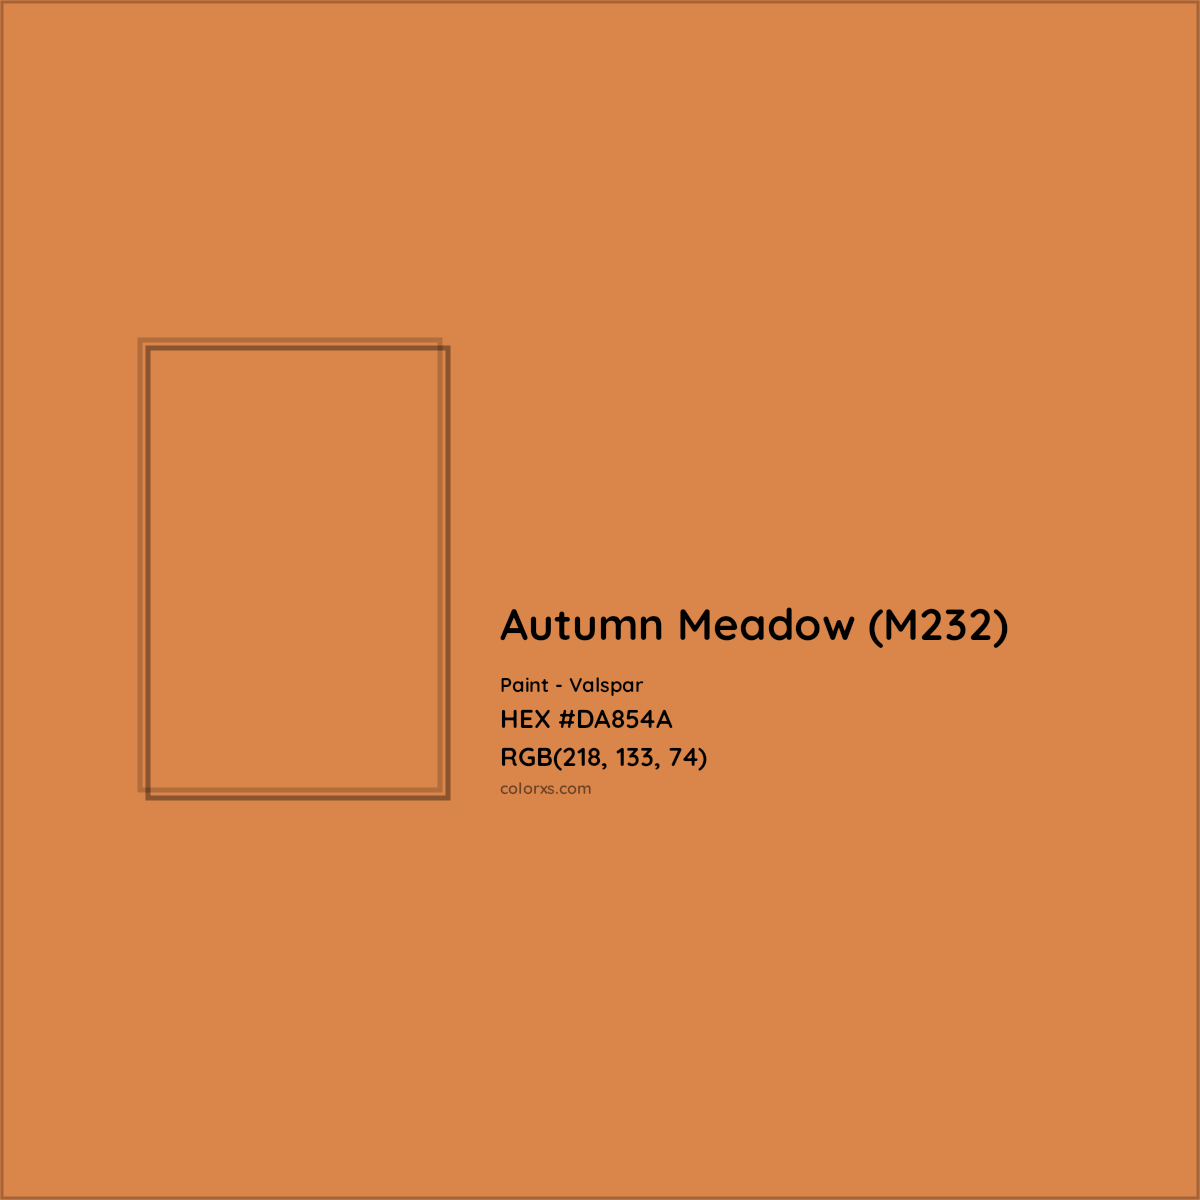 HEX #DA854A Autumn Meadow (M232) Paint Valspar - Color Code